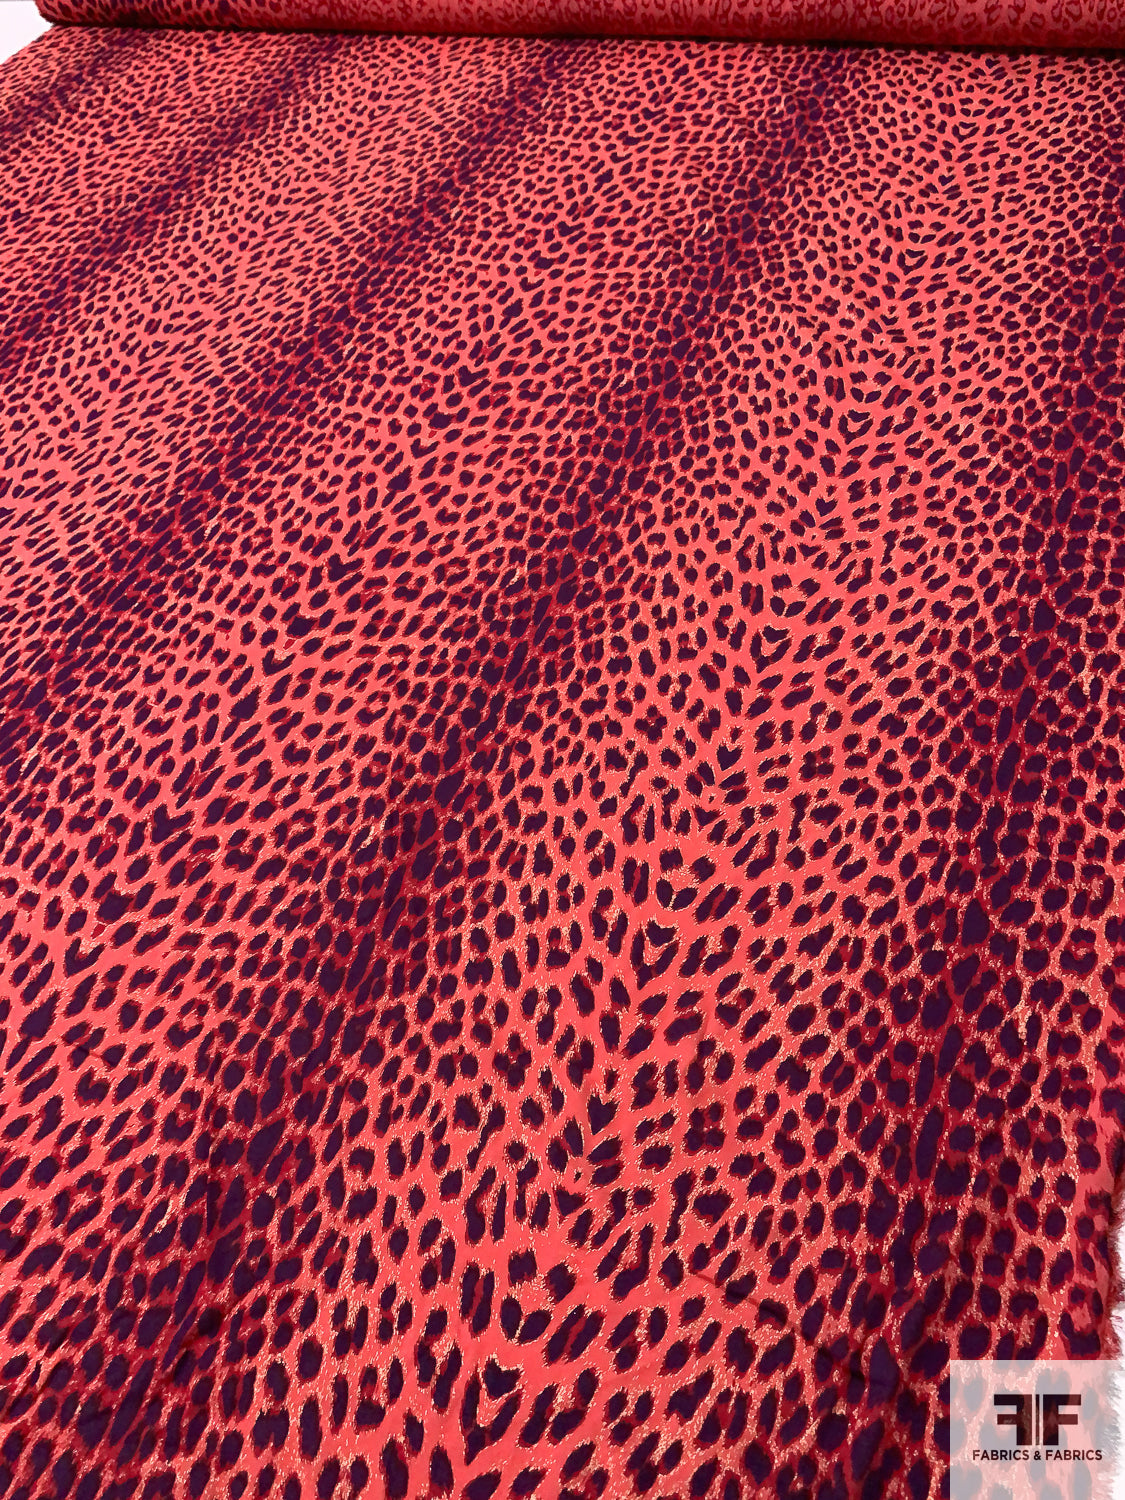 Cheetah Printed Foil Printed Silk Georgette - Hot Coral Pink / Red / Purple